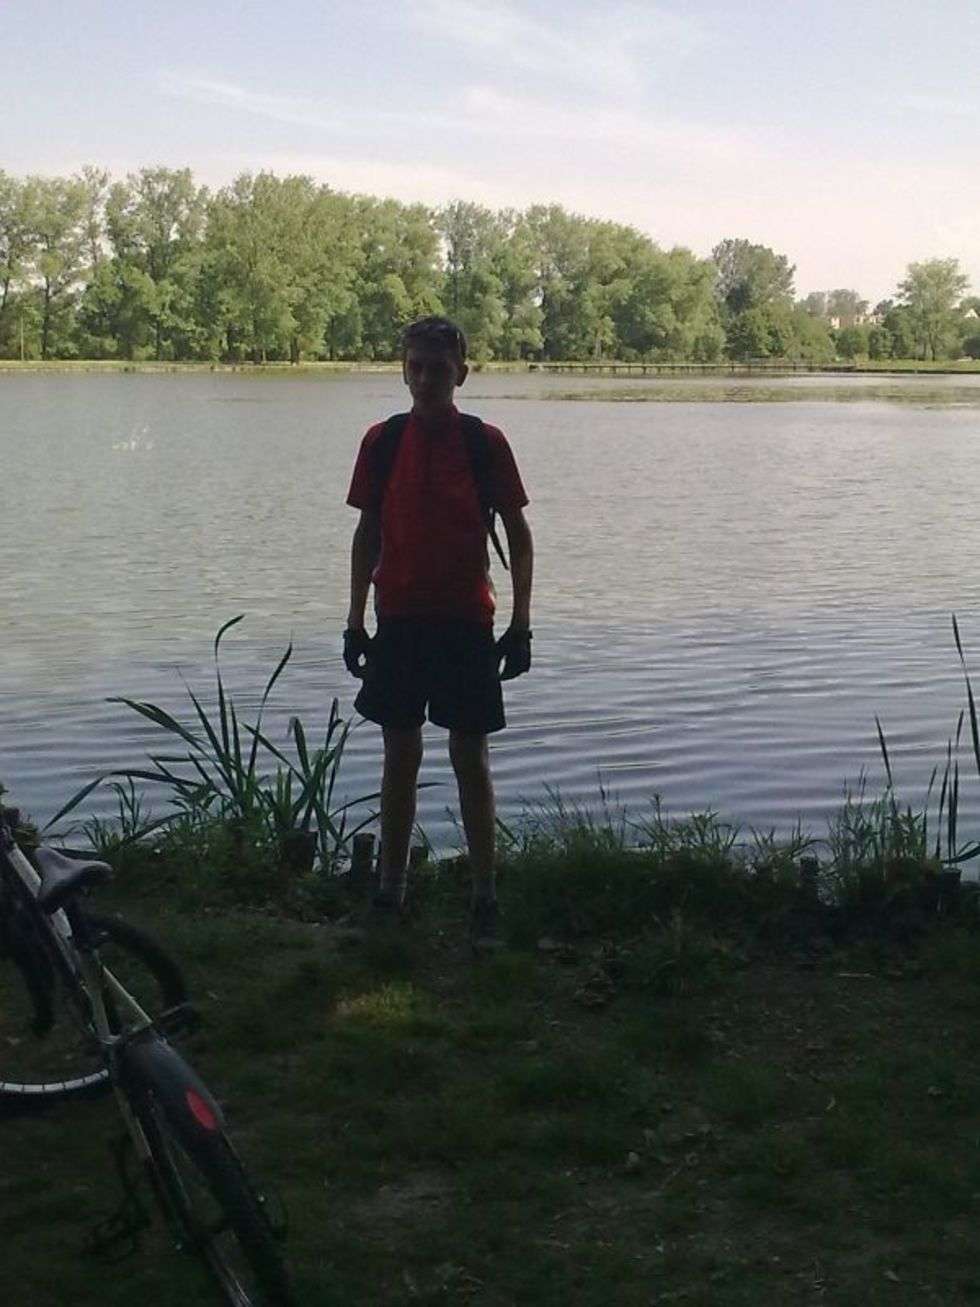  Zdjęcia zostały wykonane podczas wycieczki rowerowej z moim synem nad zalew w Bychawie